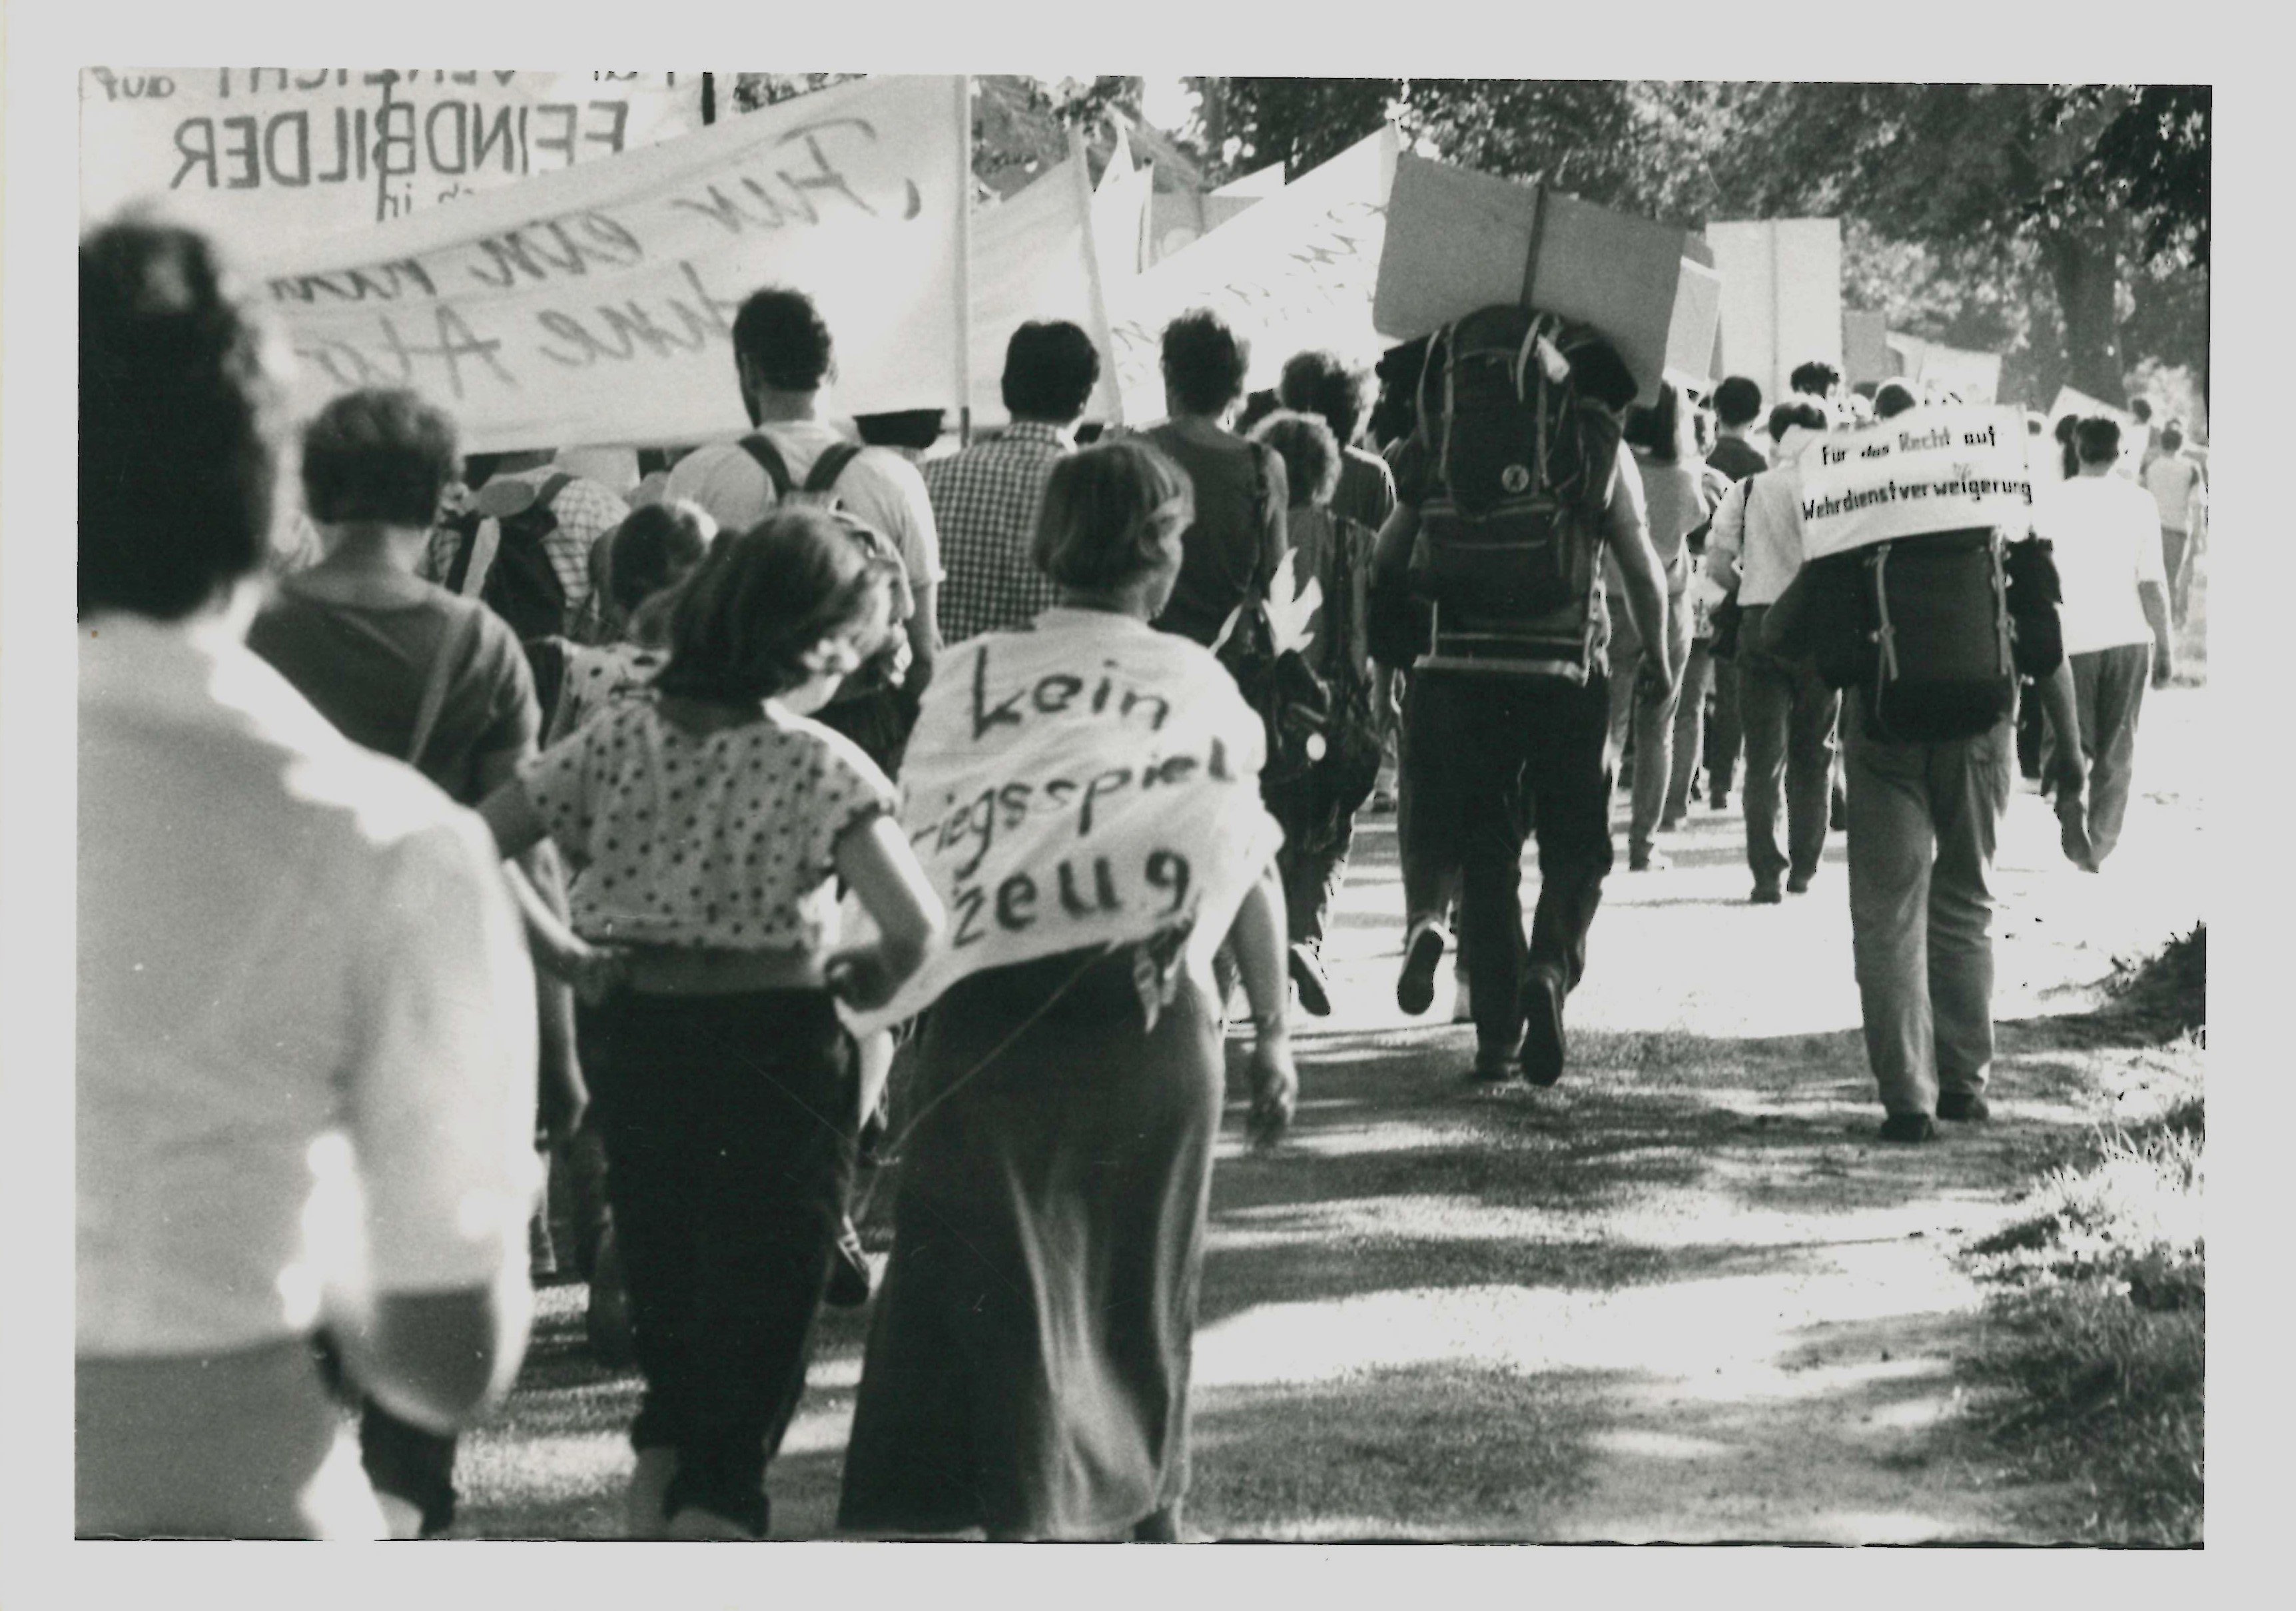 Olof-Palme-Marsch 1987: Teilnehmer mit Transparenten und Plakaten (DDR Geschichtsmuseum im Dokumentationszentrum Perleberg CC BY-SA)